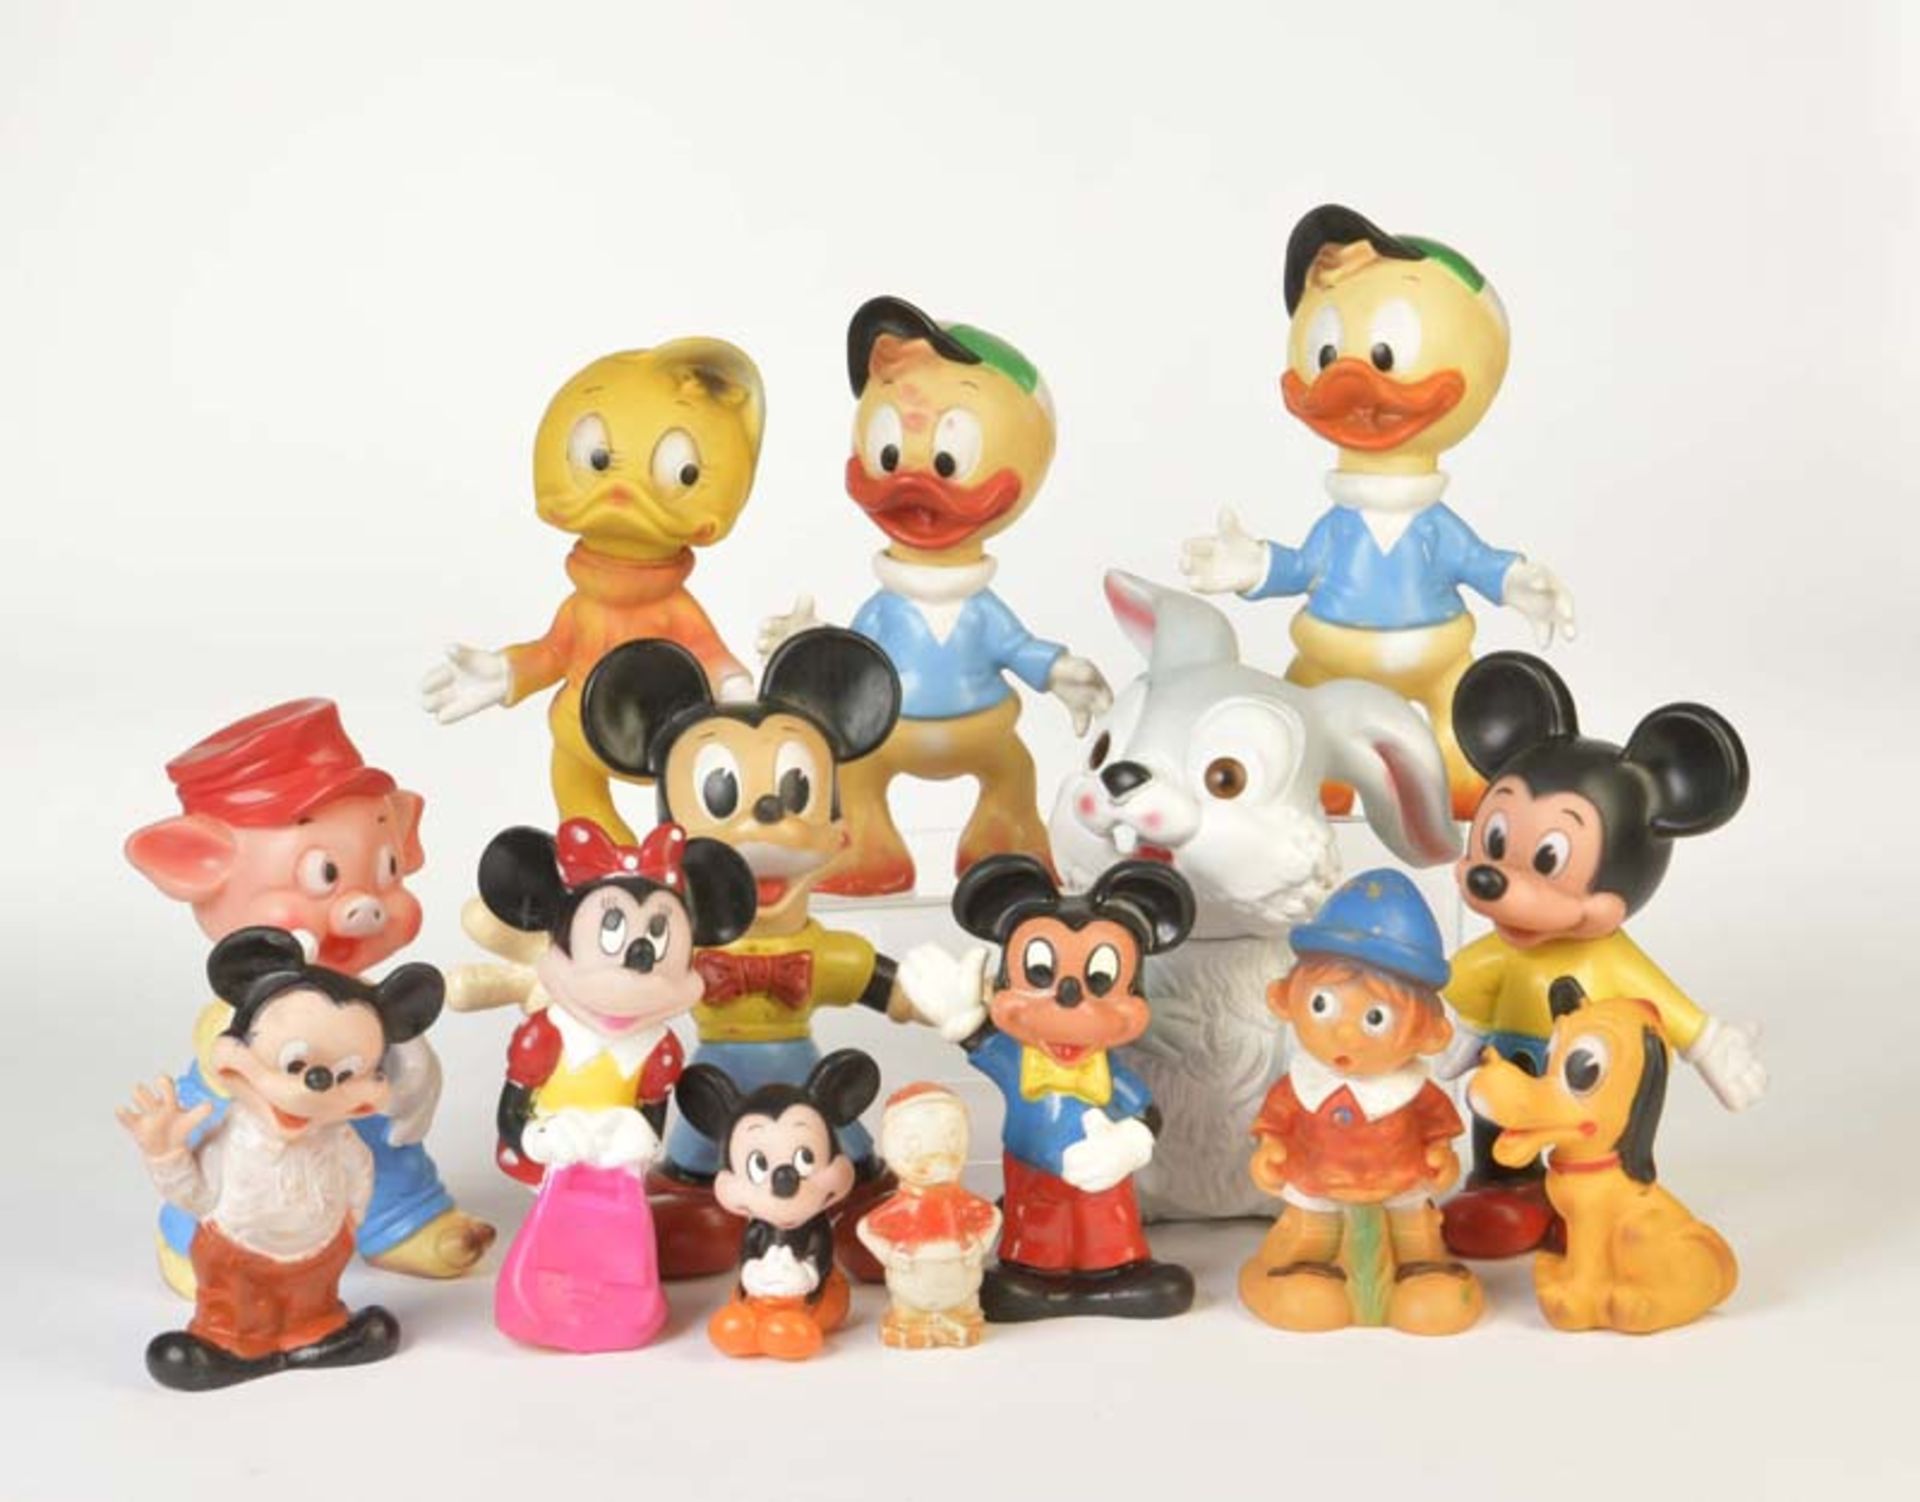 14 Disney Figures, plastic + rubber, C 2